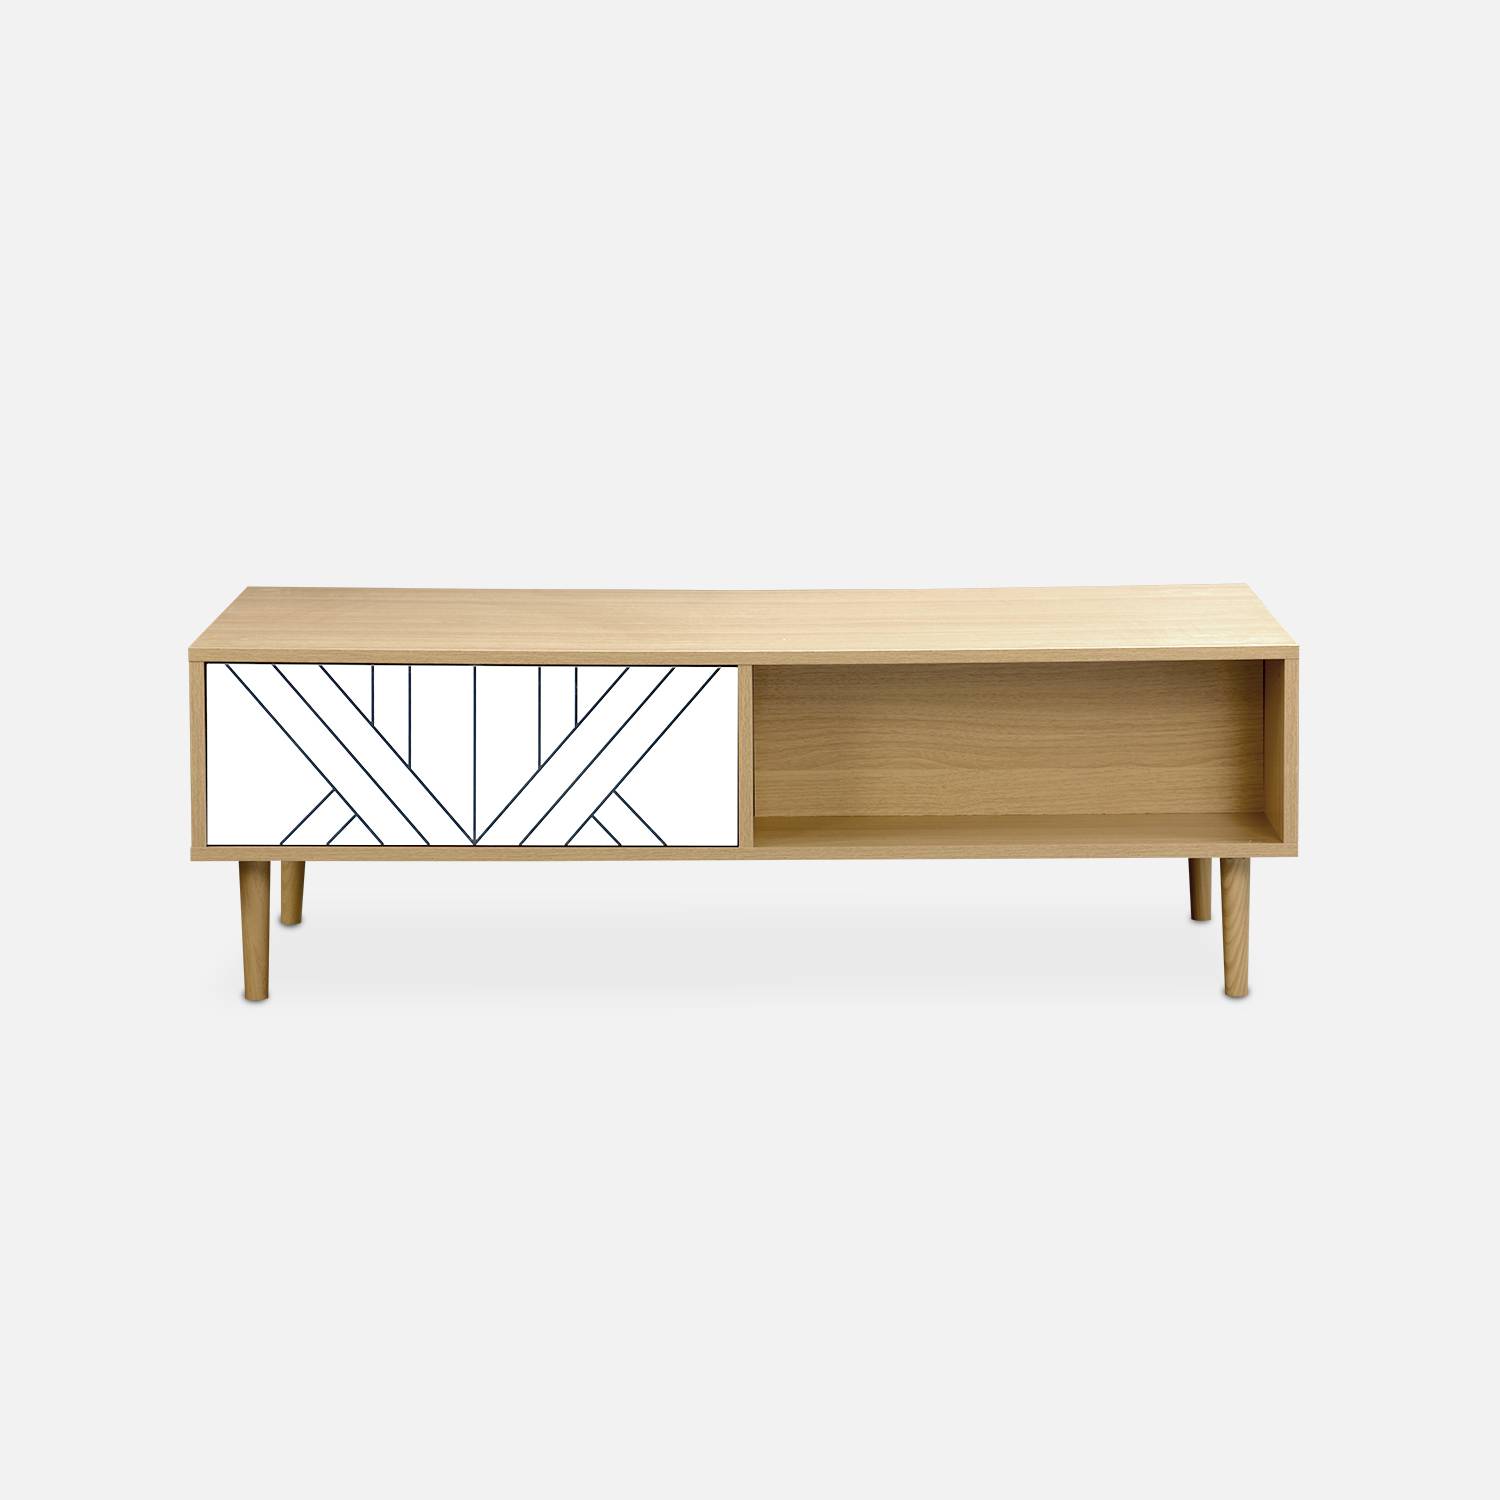 Table basse en décor bois et blanc - Mika - 2 tiroirs, 2 espaces de rangement, L 120 x l 55 x H 40cm,sweeek,Photo5